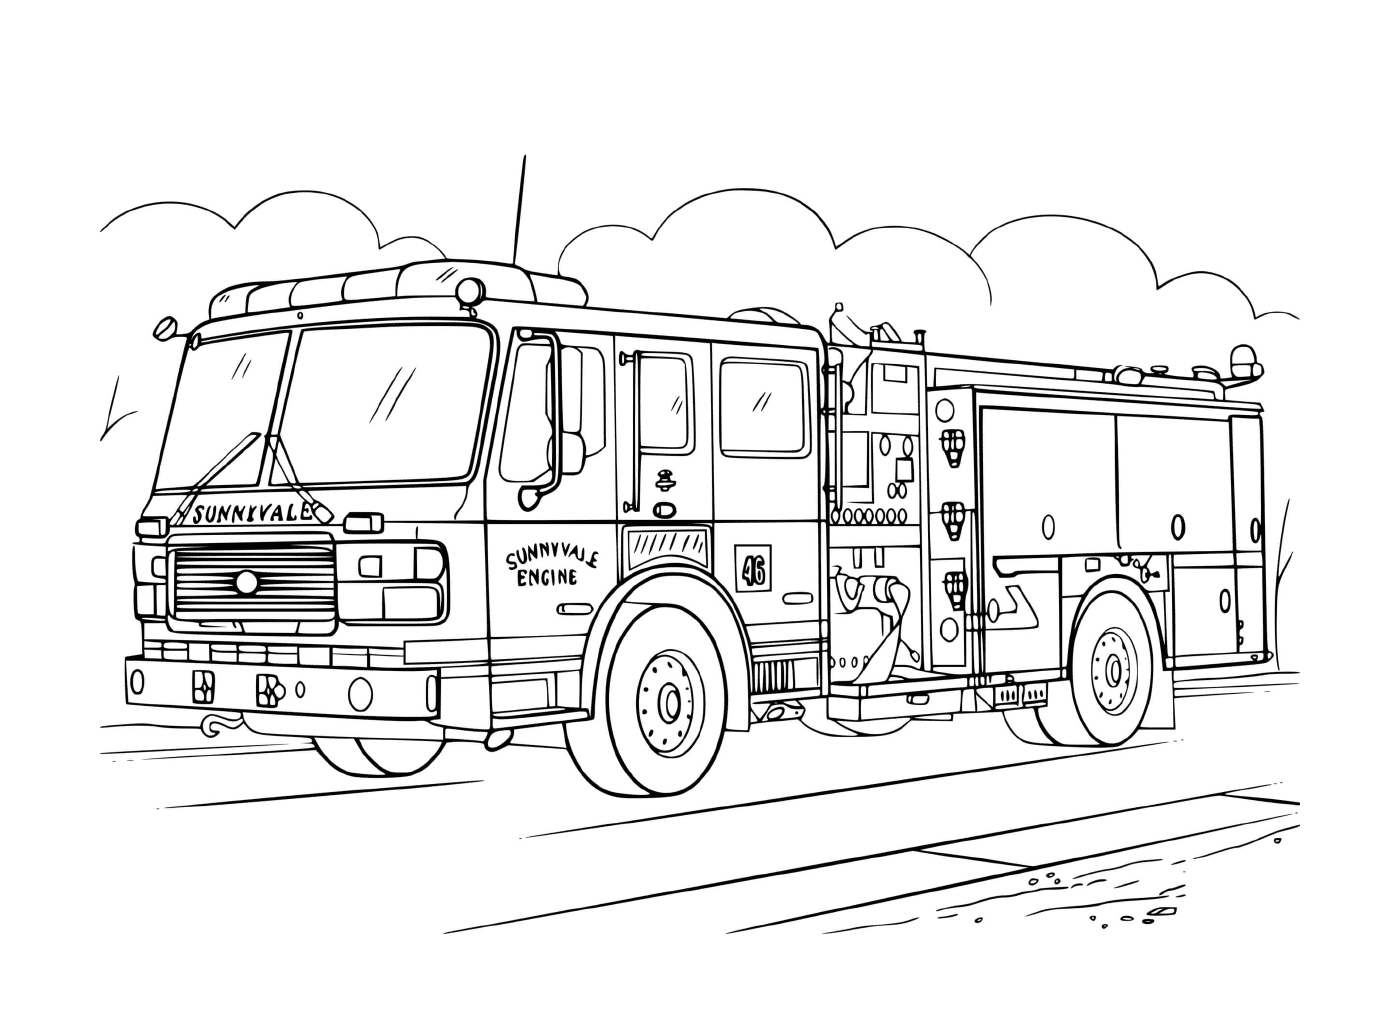  Desenho de um caminhão de bombeiros realista 